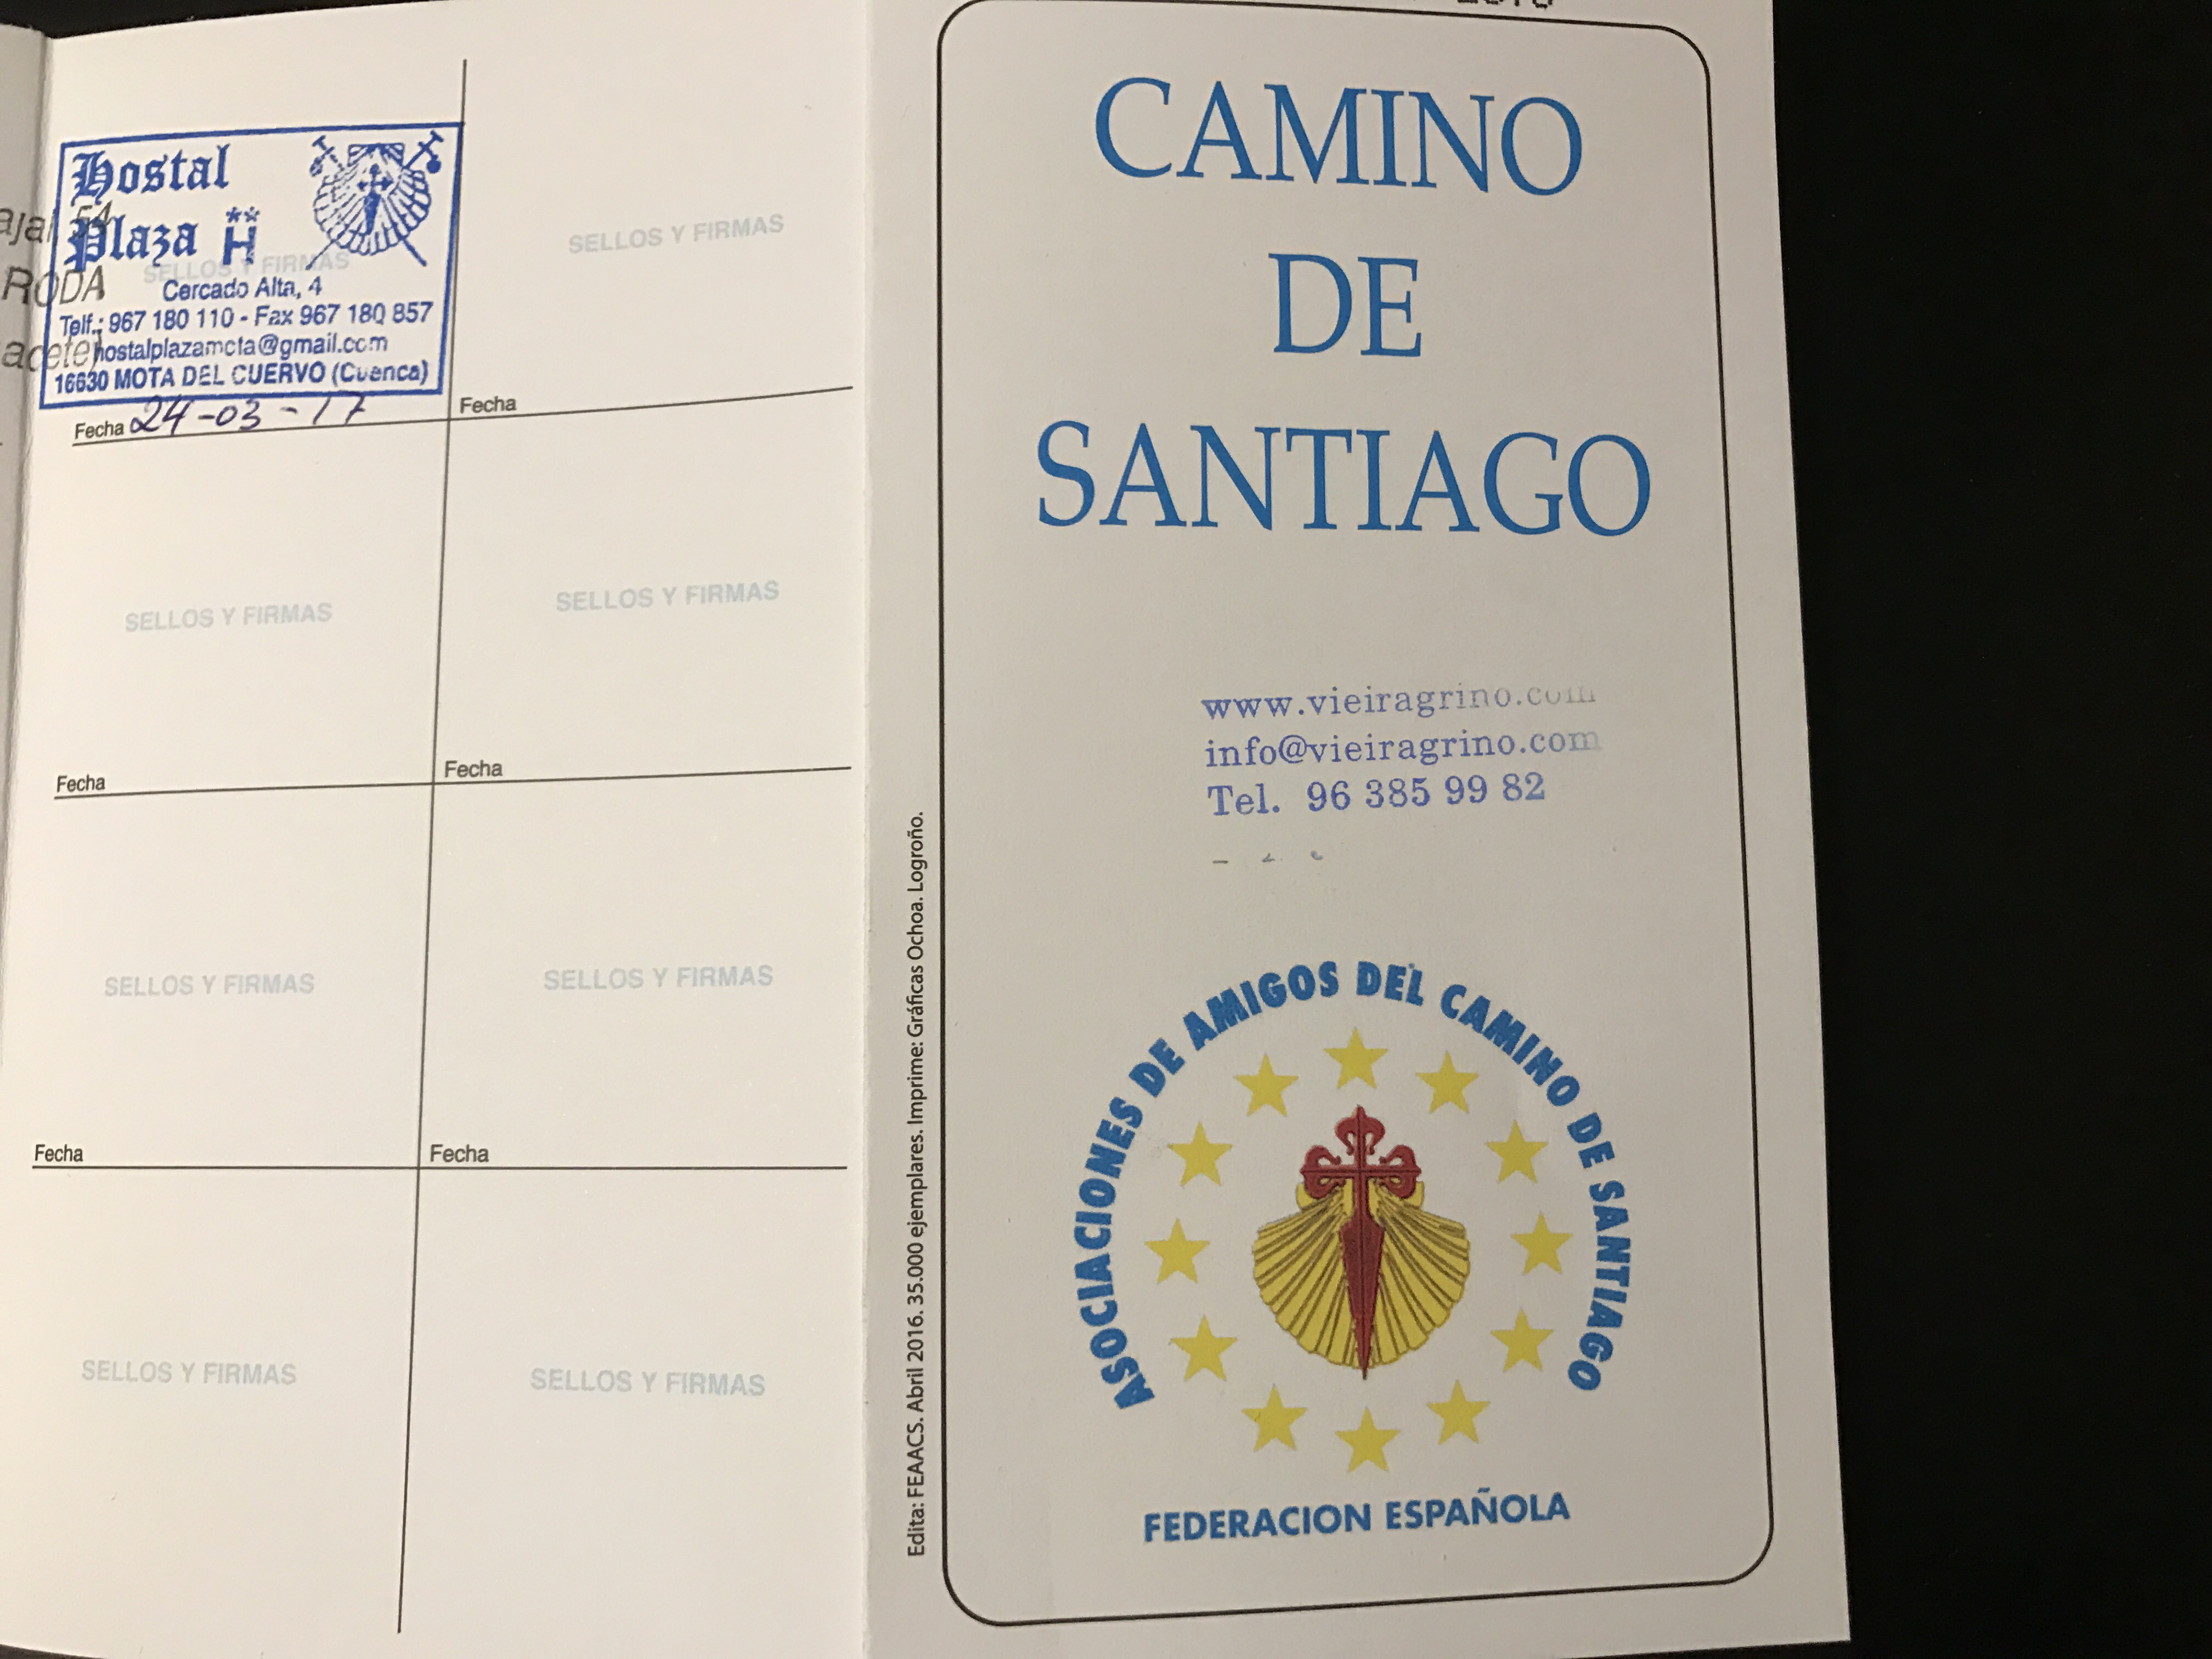 Credencial del Camino de Santiago